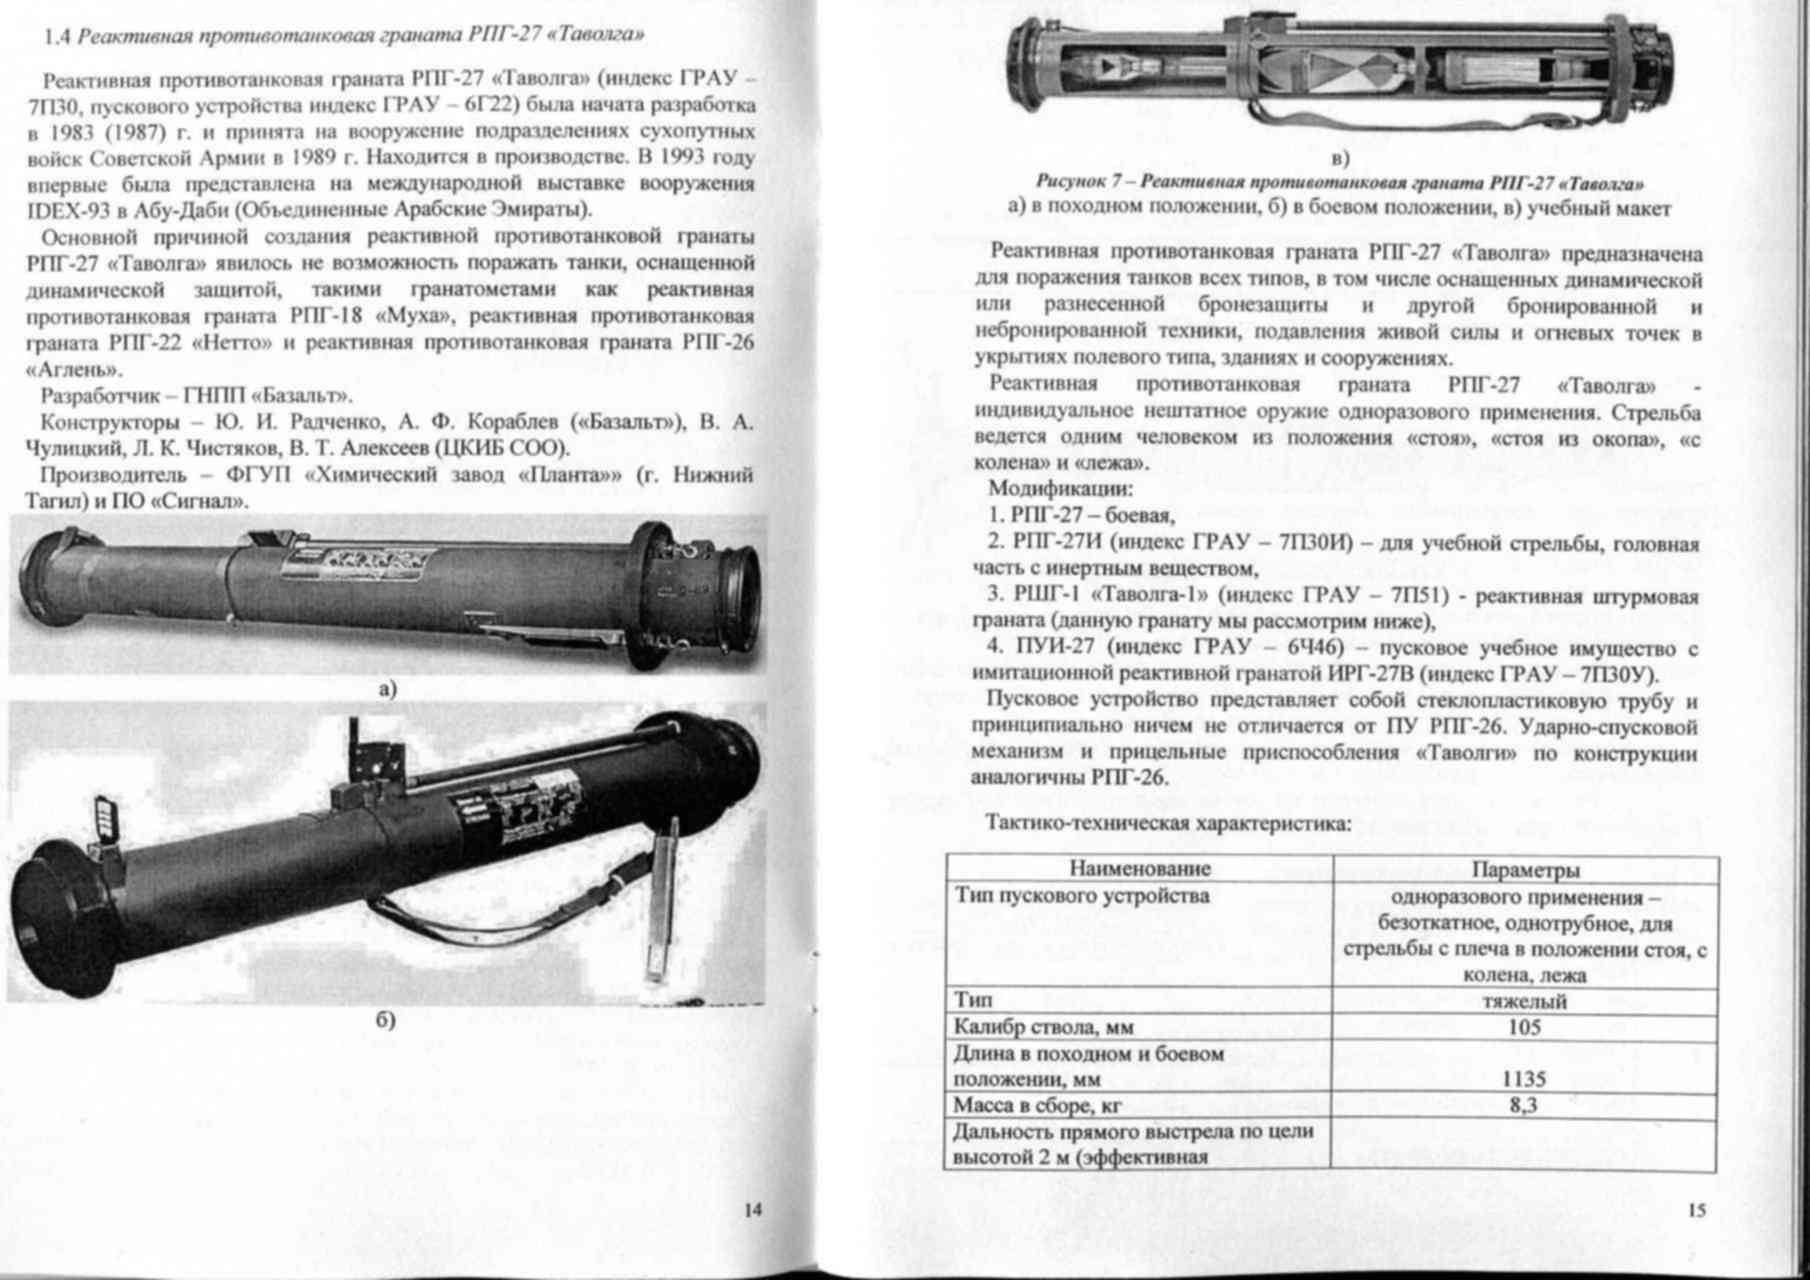 Гранатомет рпг-26 аглень. фото. видео. ттх. устройство